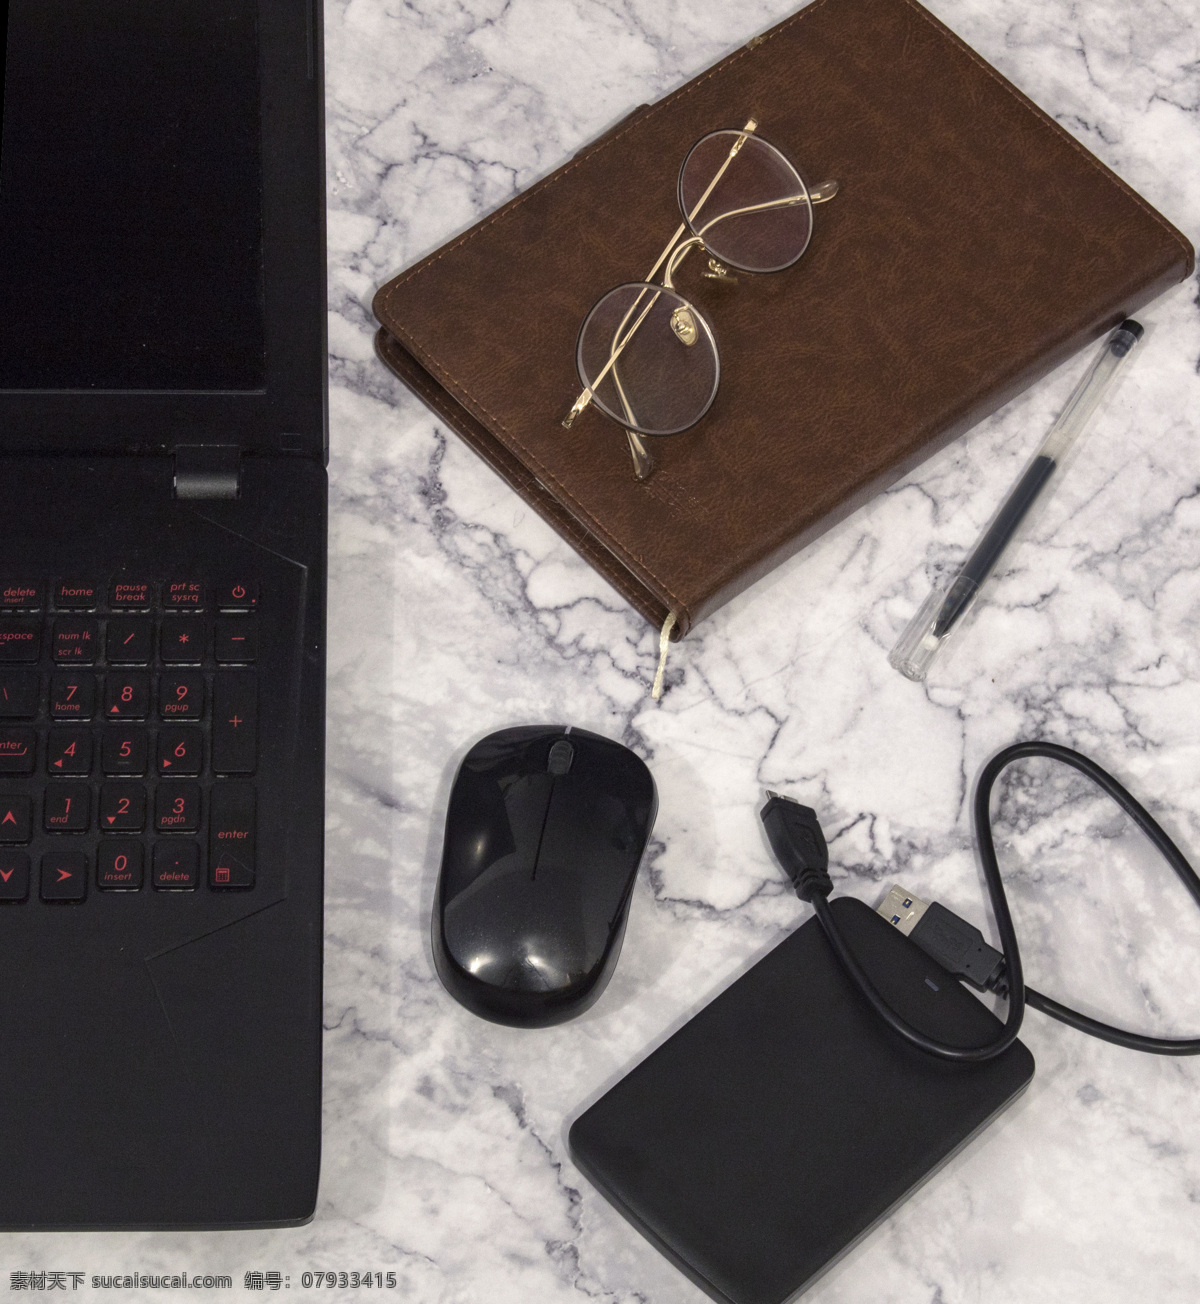 商务办公 桌面 商用 商务 办公桌 笔记本电脑 鼠标 移动硬盘 笔记本 笔 眼镜